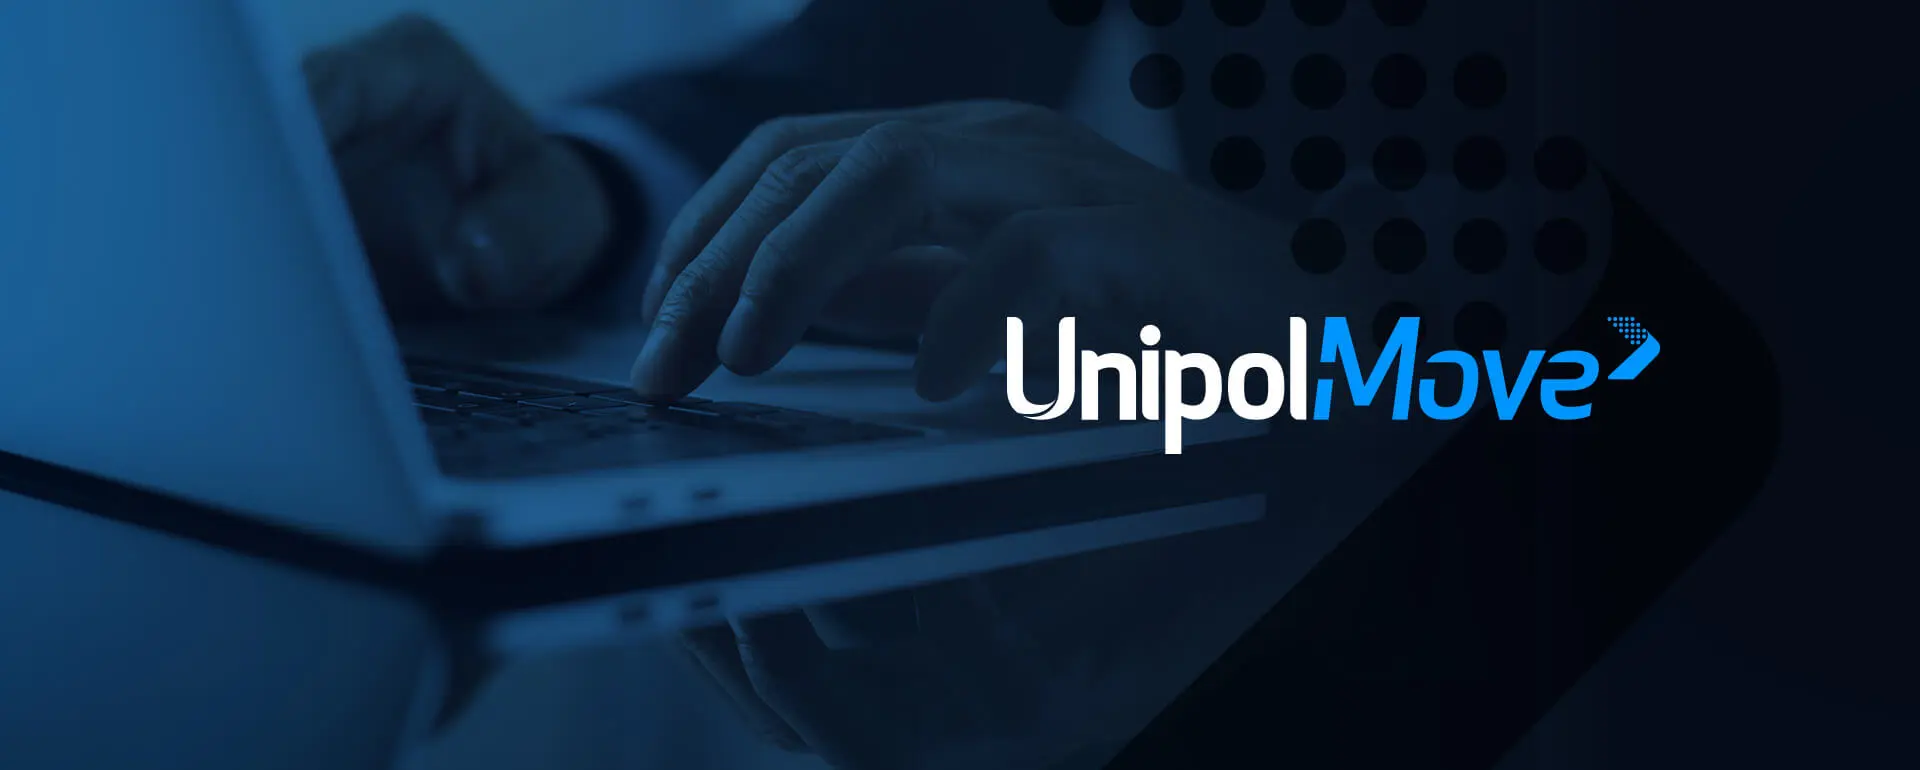 Aumentare i clienti in Agenzia grazie a UnipolMove